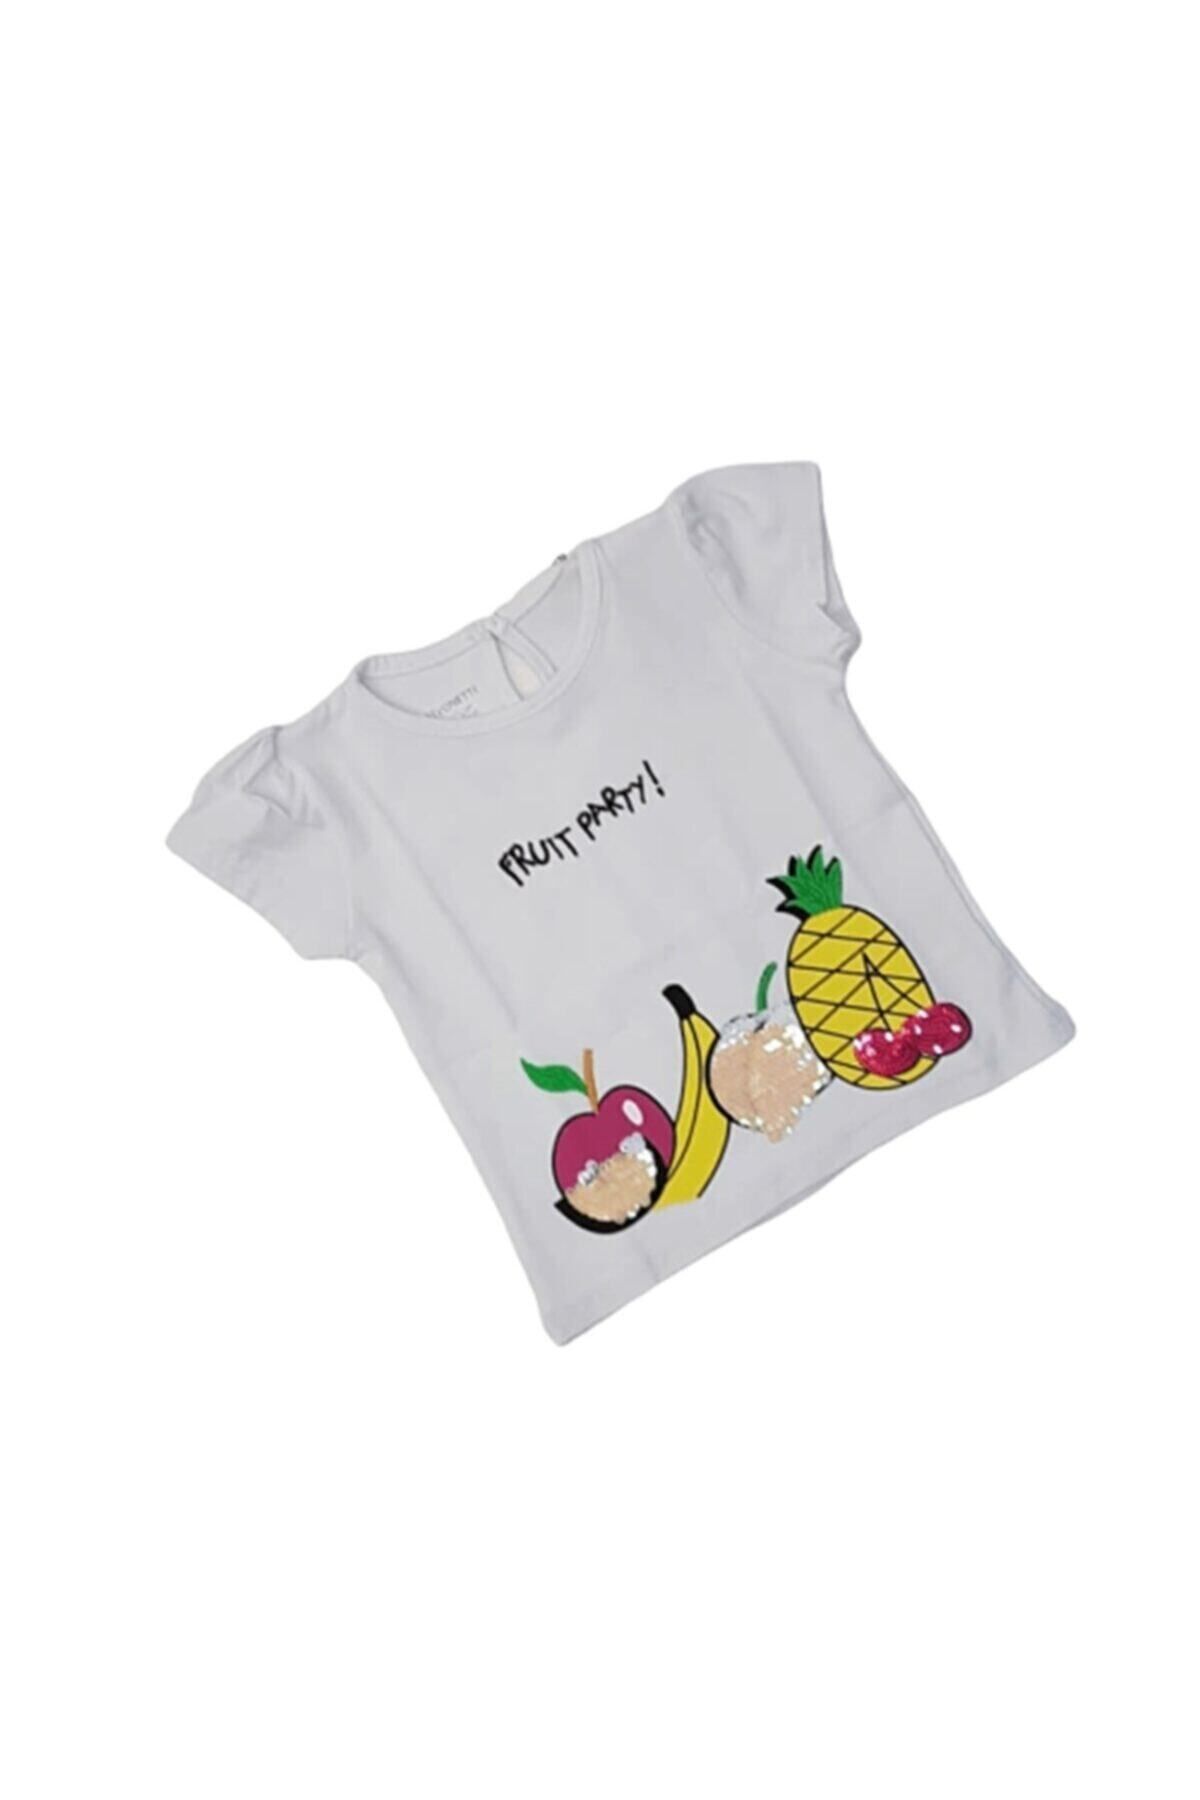 Divonette Kids 1200 Kız Bebek Fruit Party Baskılı K.kol Tişört